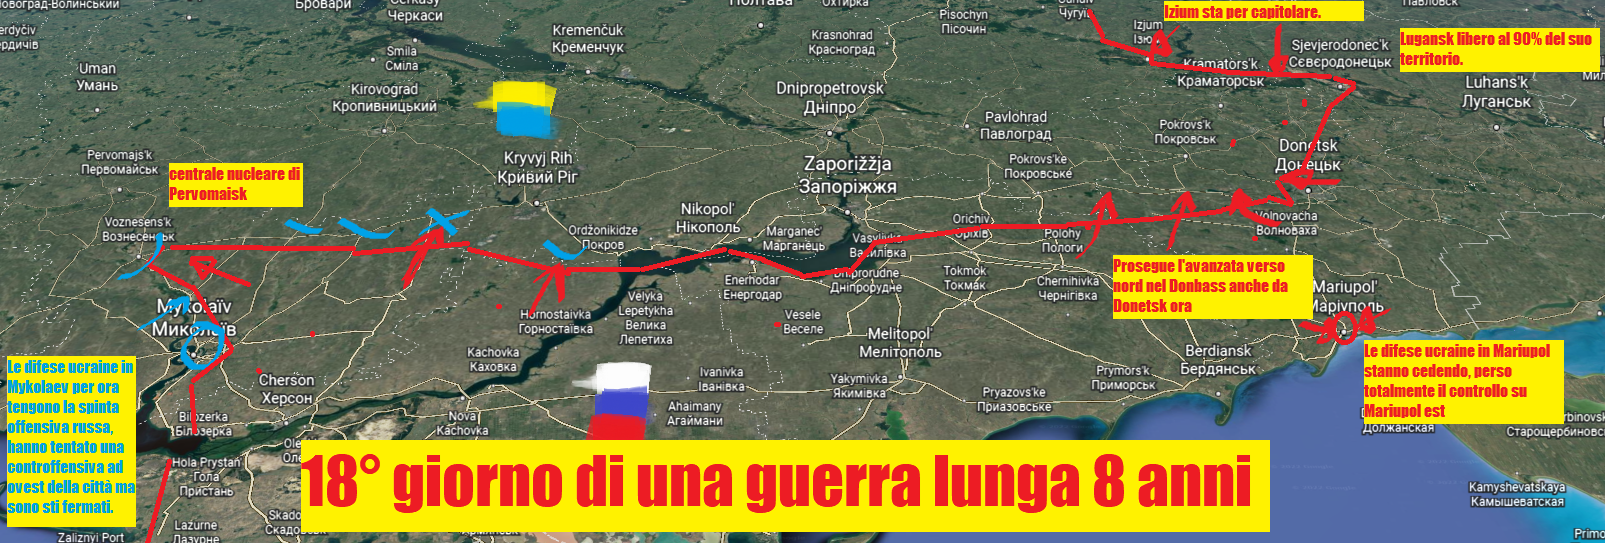 mappa ucraina con fronti guerra indicati